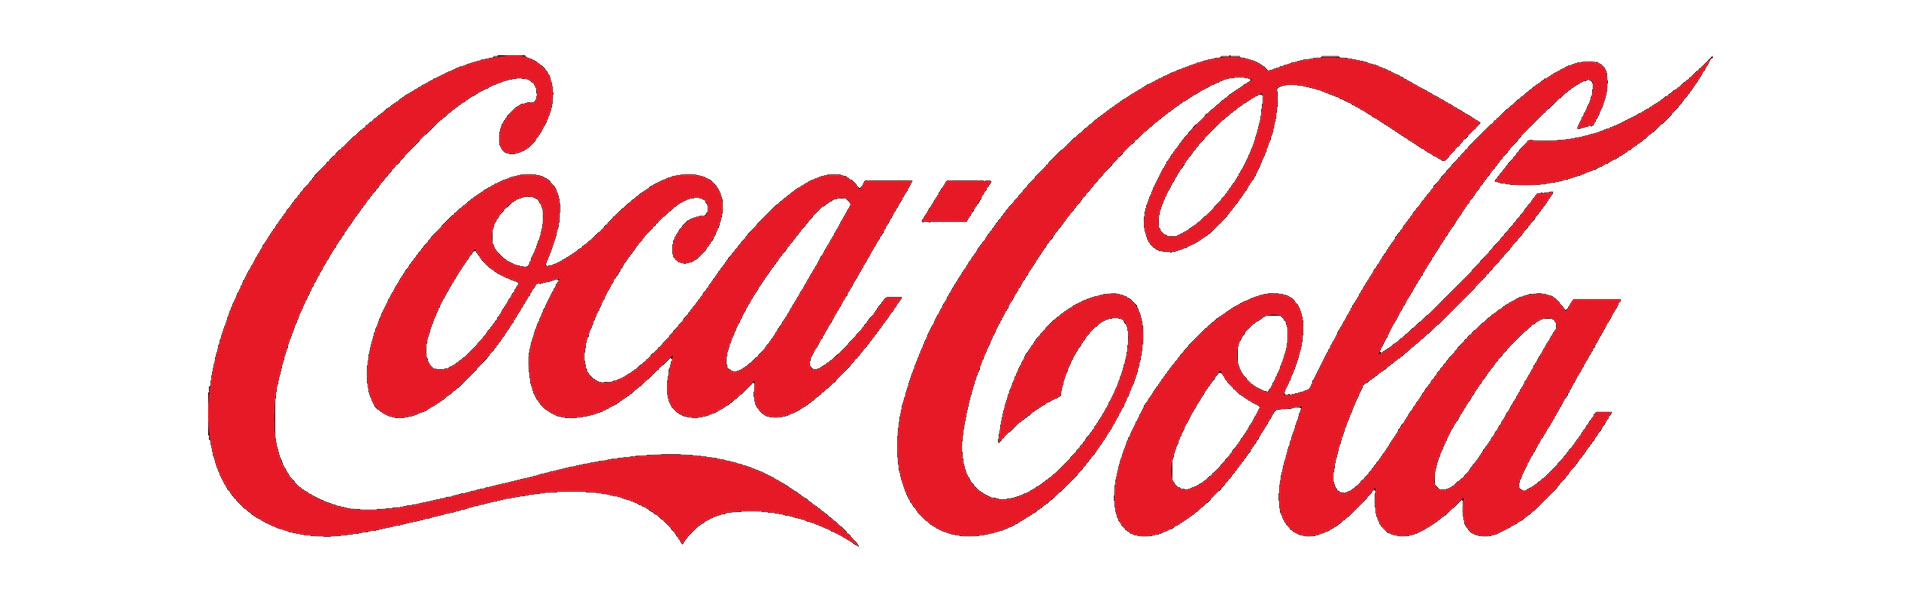 Couleur rouge dans le logo Coca Cola